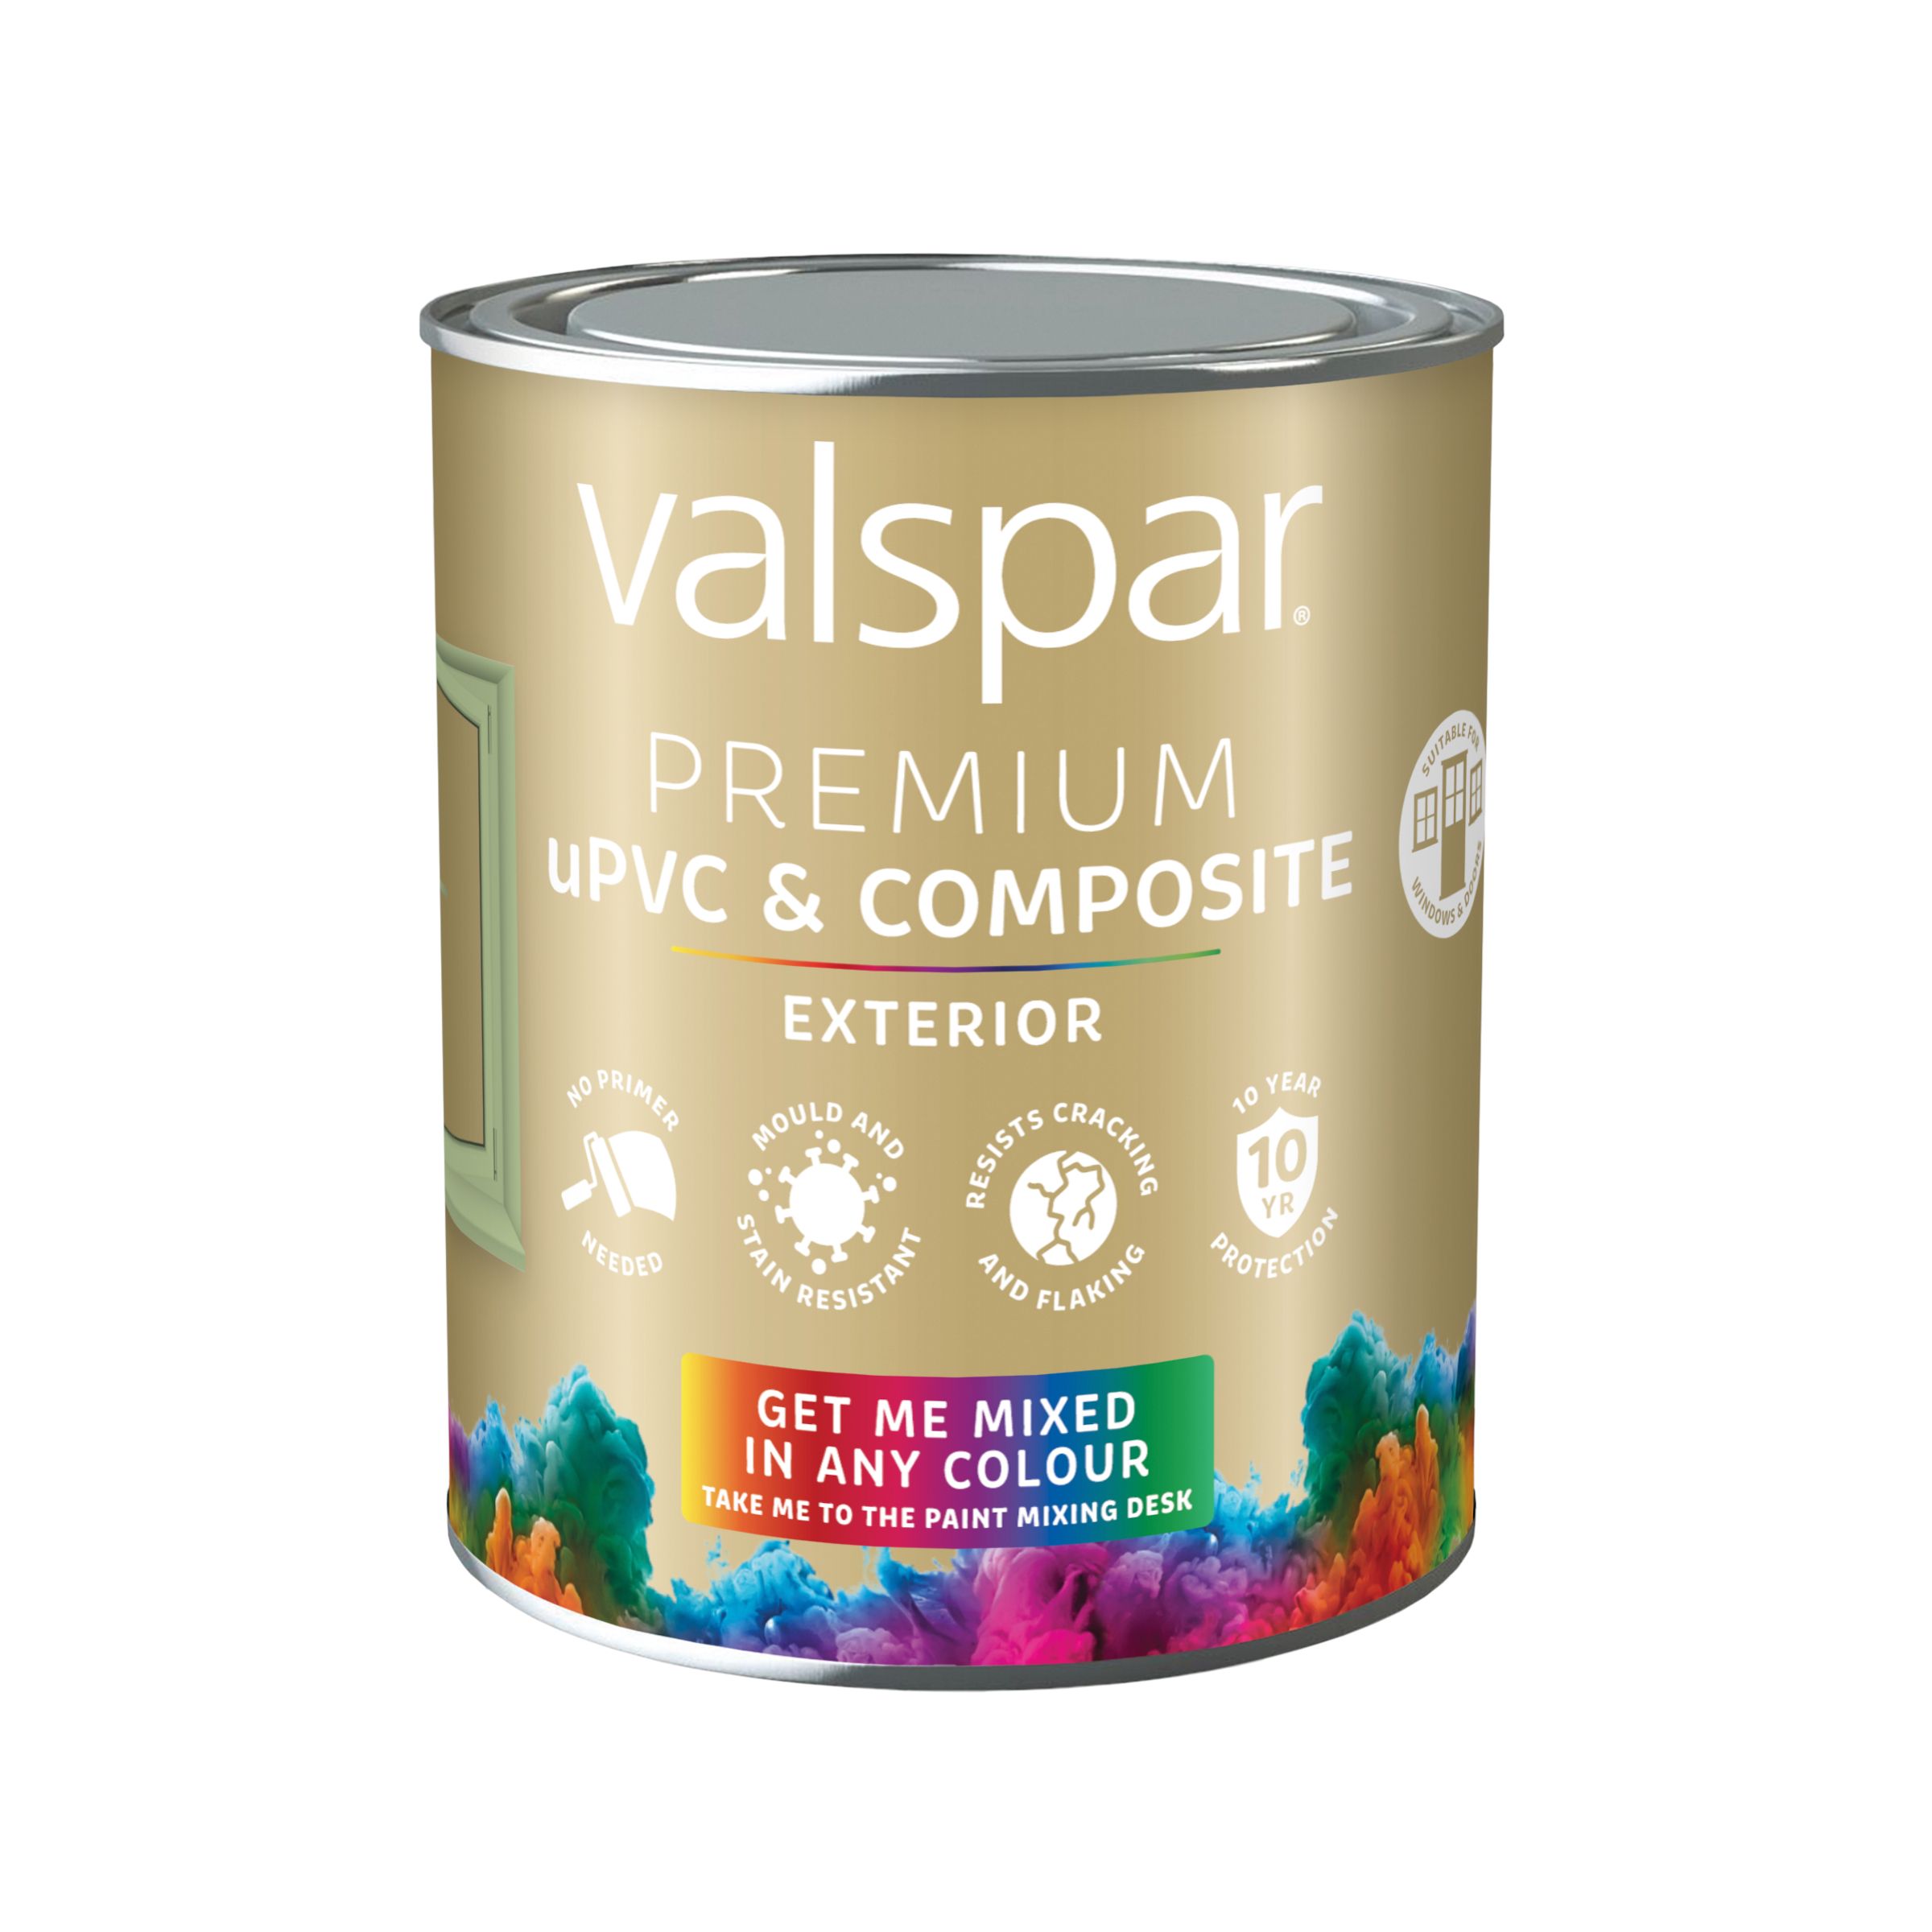 Valspar Premium Exterior uPVC & composite Multi-surface Satin Paint, Base 2, 750ml